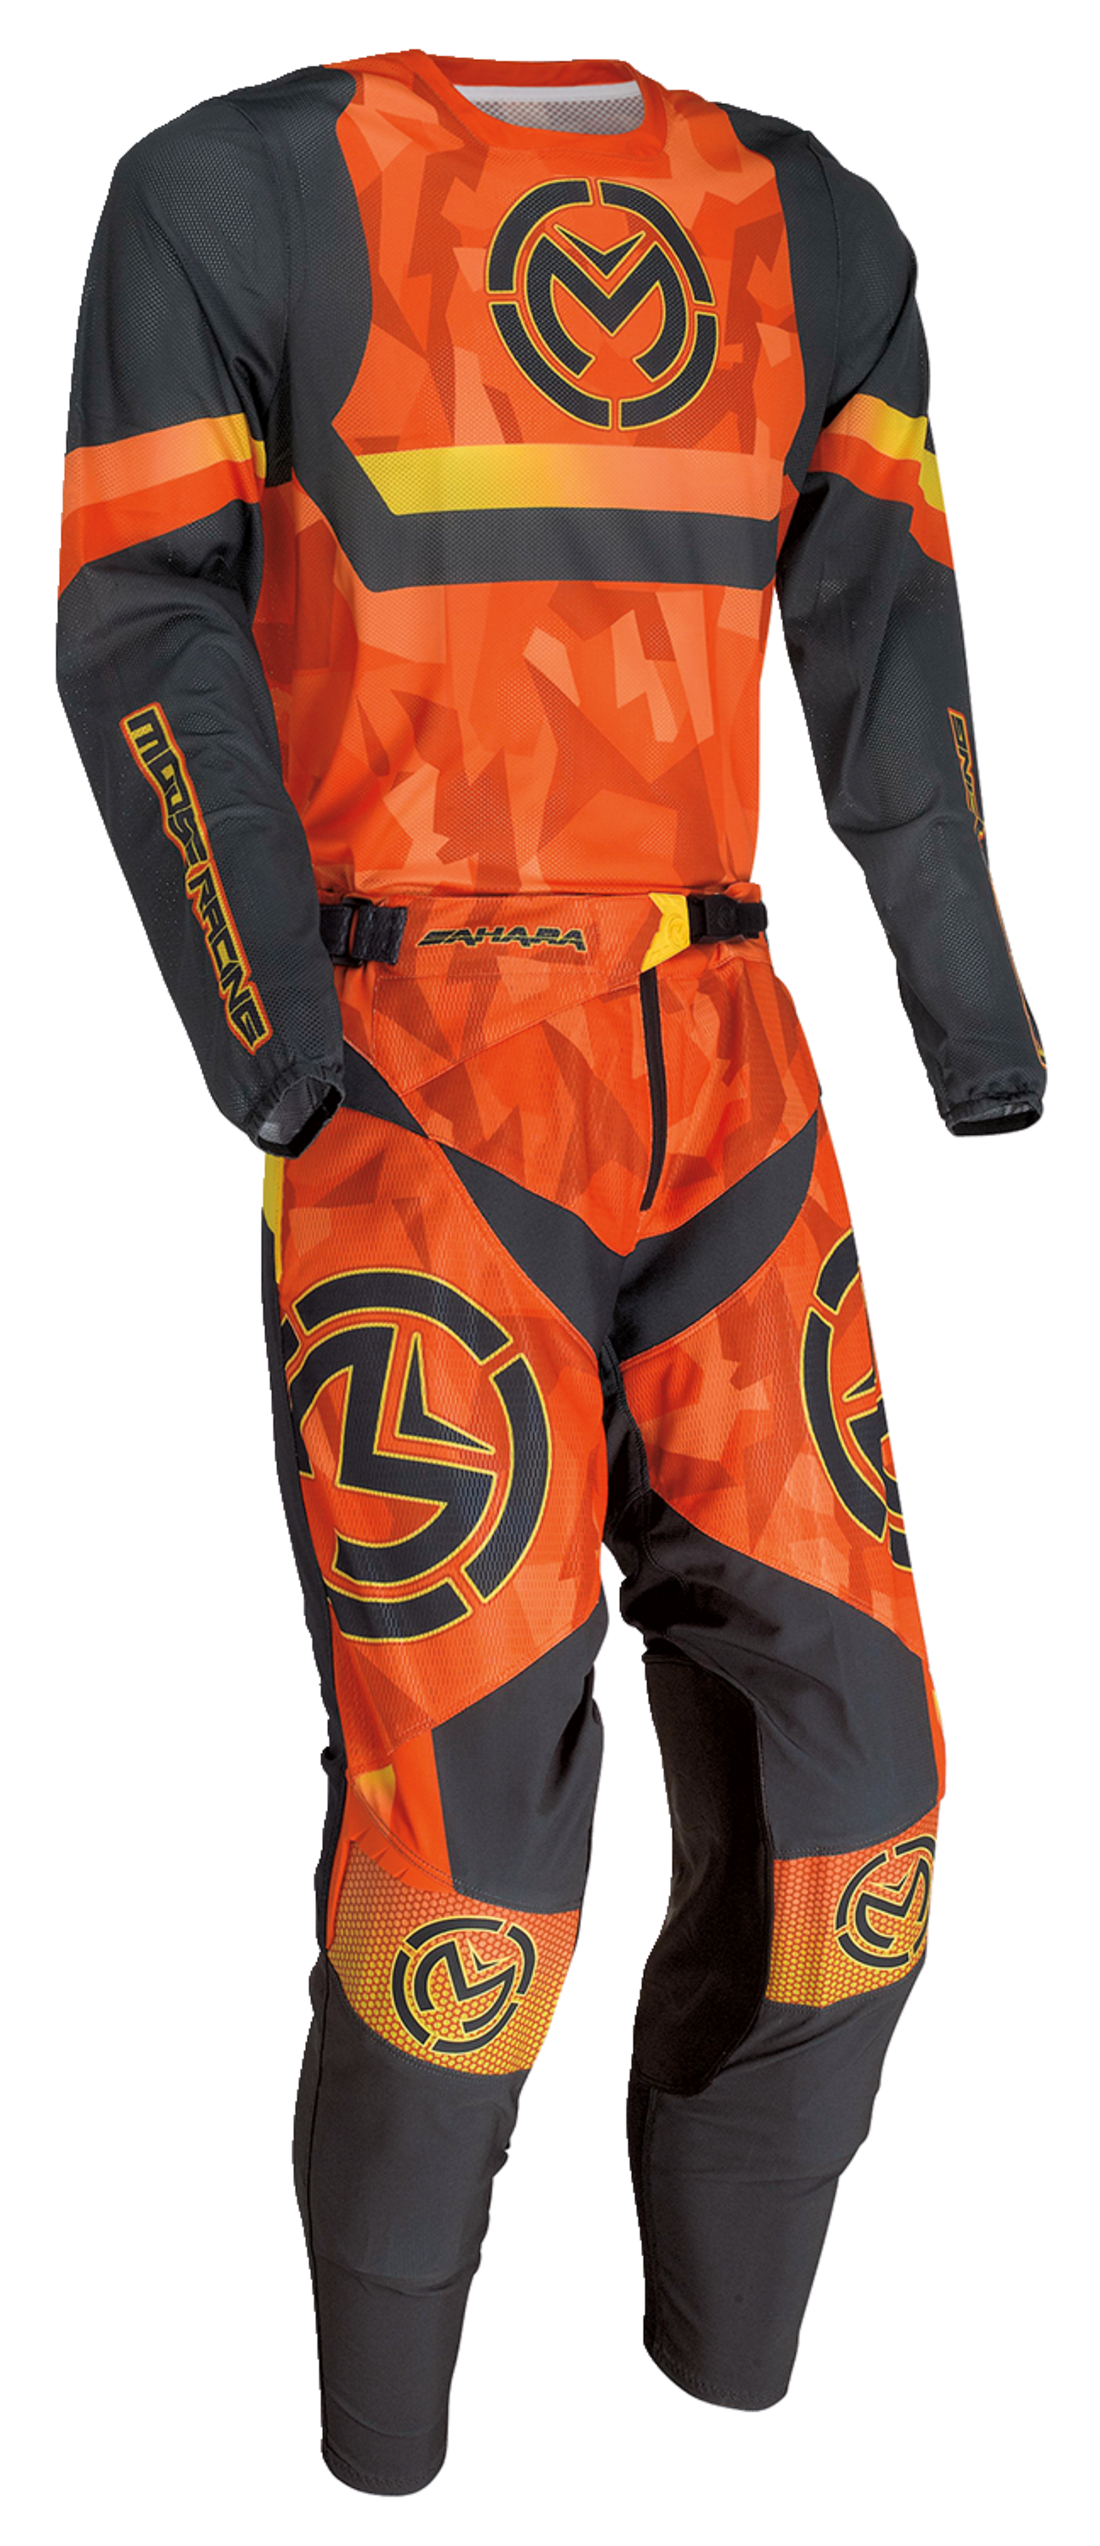 MOOSE RACING Sahara™ Jersey - Orange/Black - 3XL 2910-7227